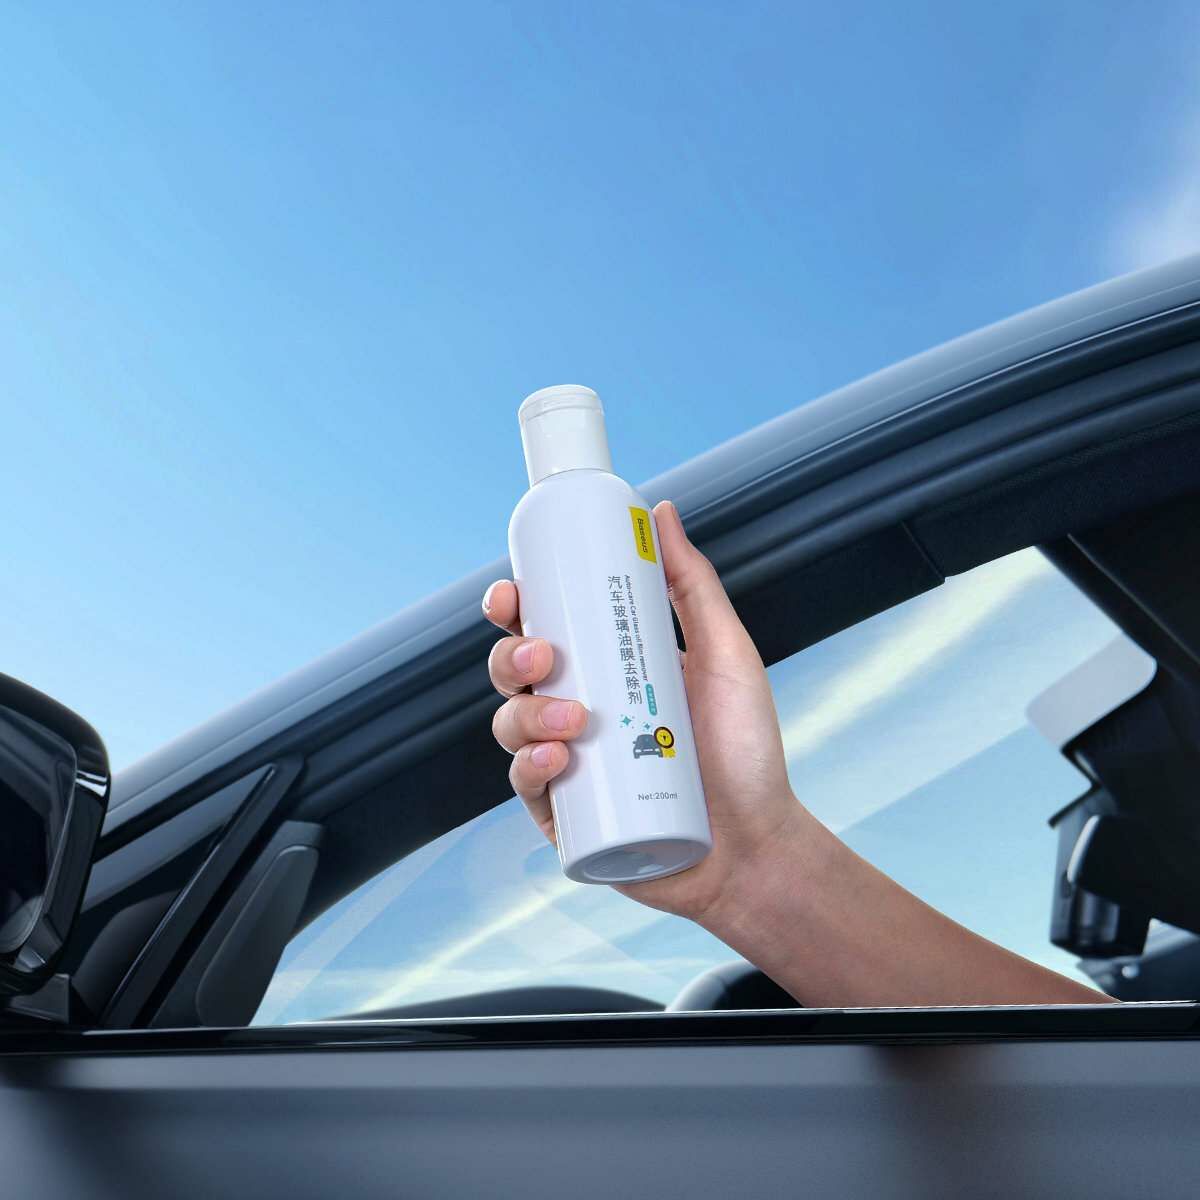 Kép 6/23 - Baseus autós kiegészítő, Auto-care ablak tisztító folyadék, zsíros foltok eltávolítására, 200ml, fehér (CRYH020002)